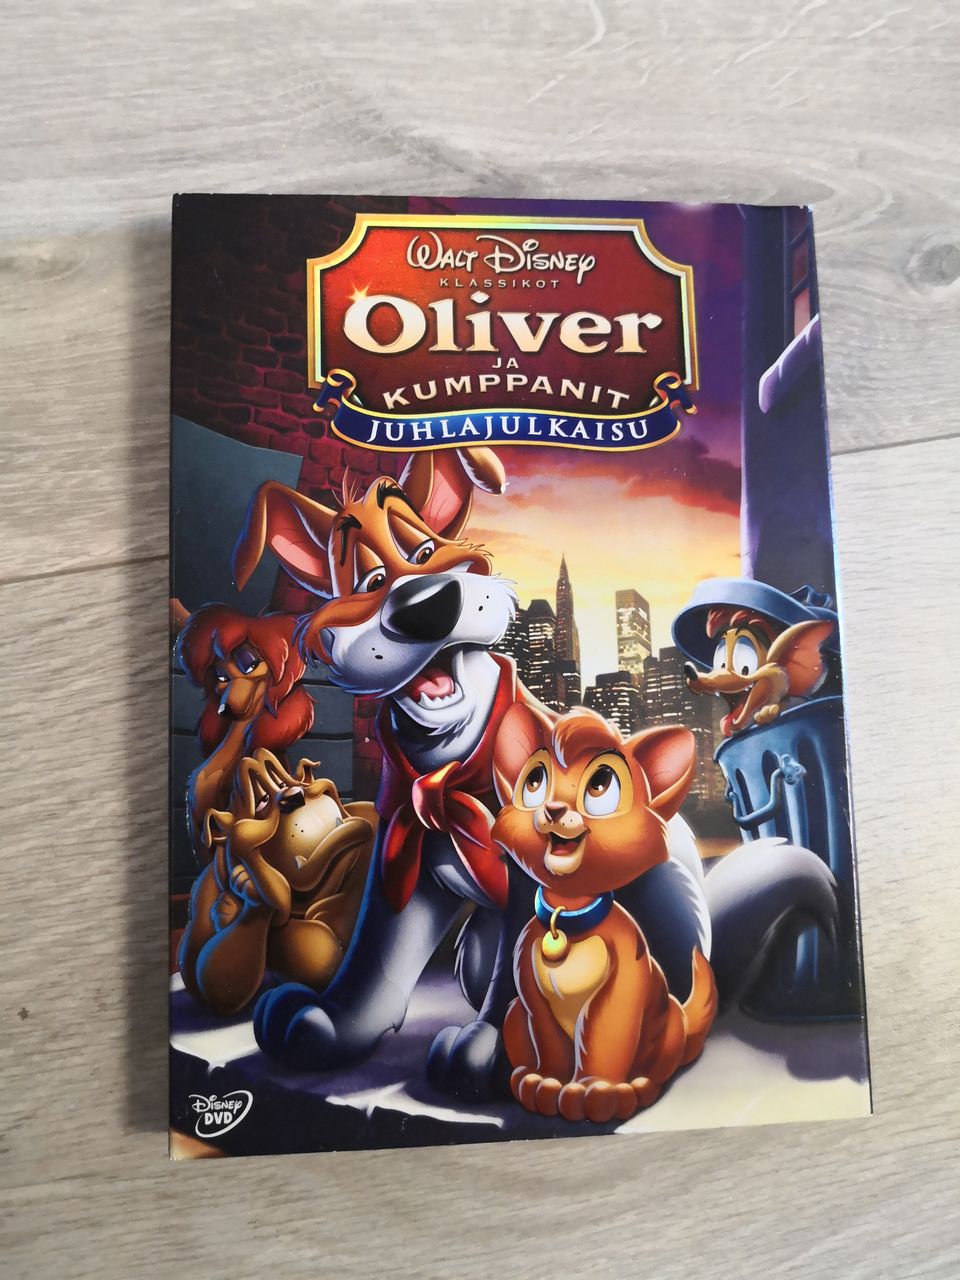 Disneyn Oliver ja kumppanit juhlajulkaisu DVD